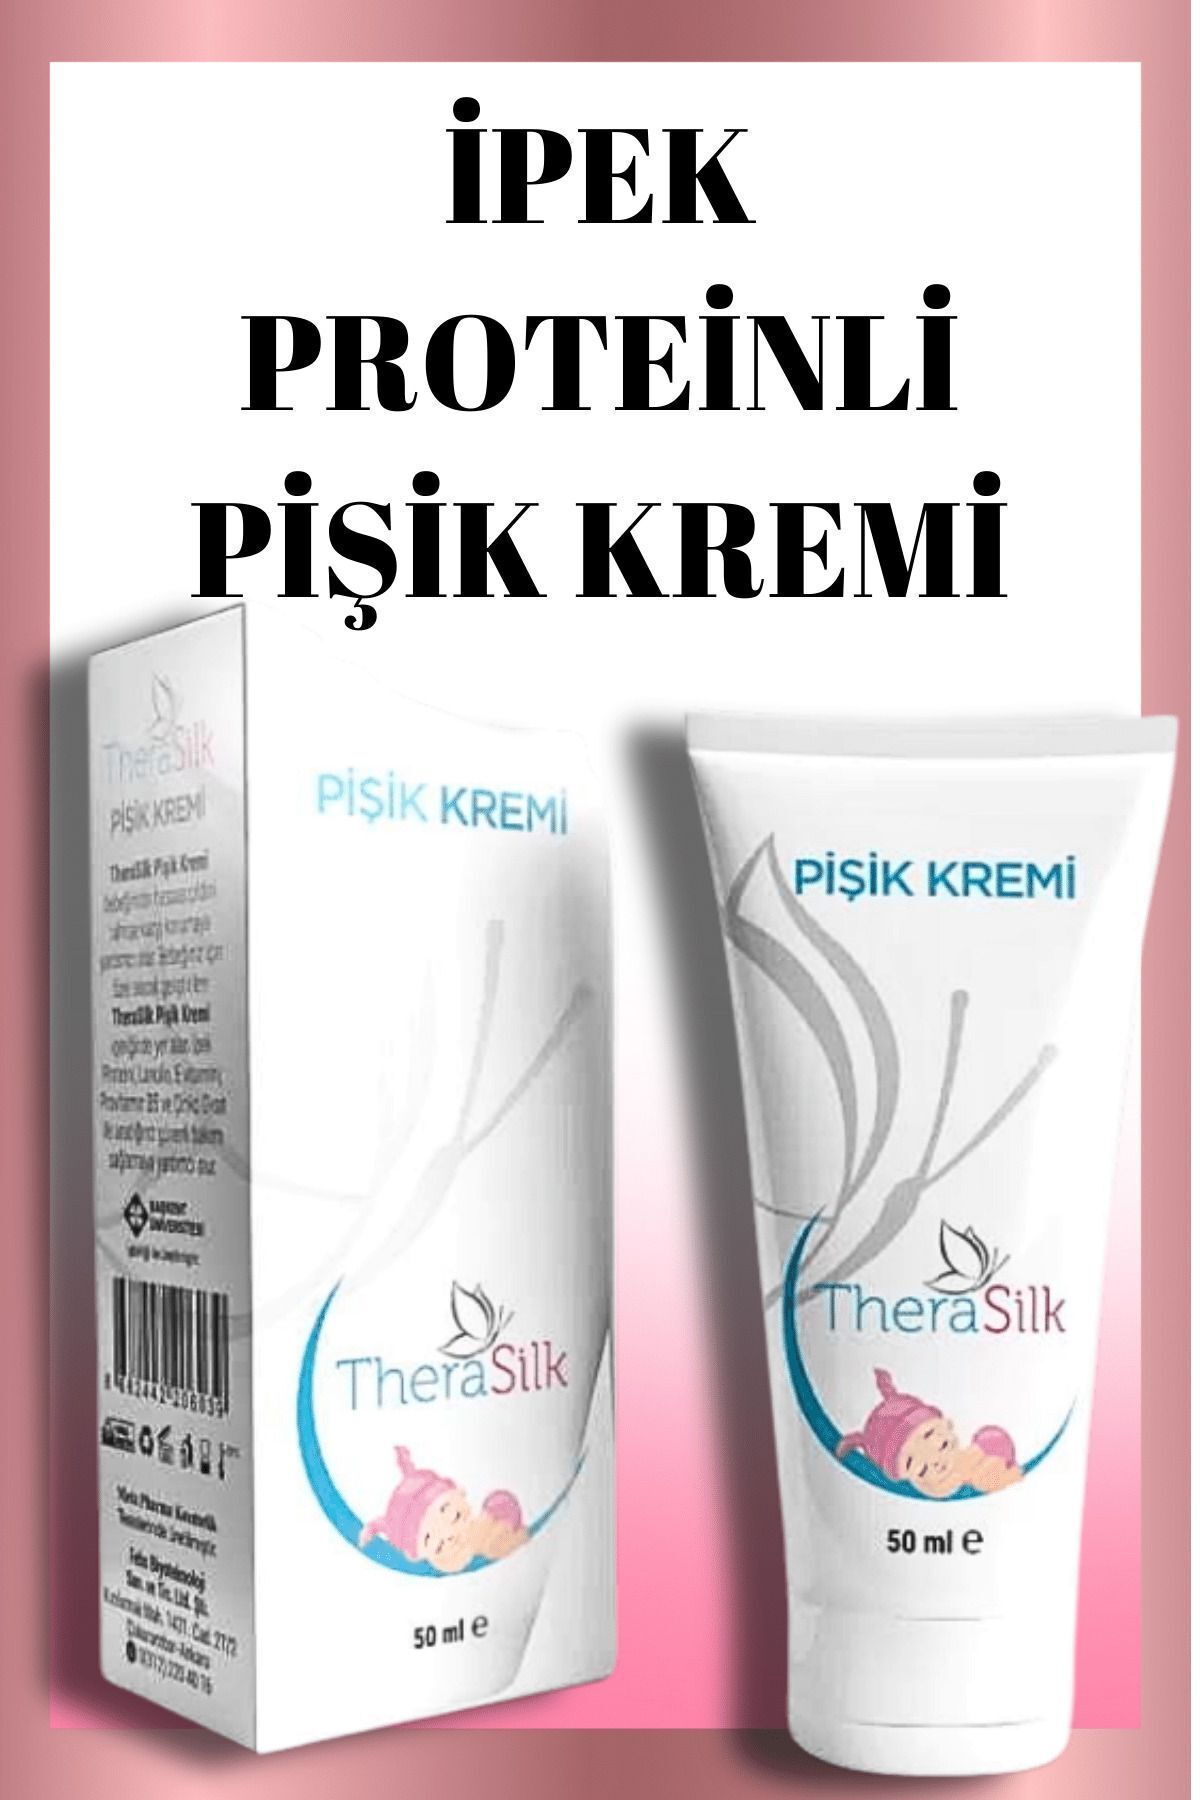 Therasilk Iprek Proteinli Pişik Kremi - Kolajenli Pişik Kremi 50 ml - Collagen